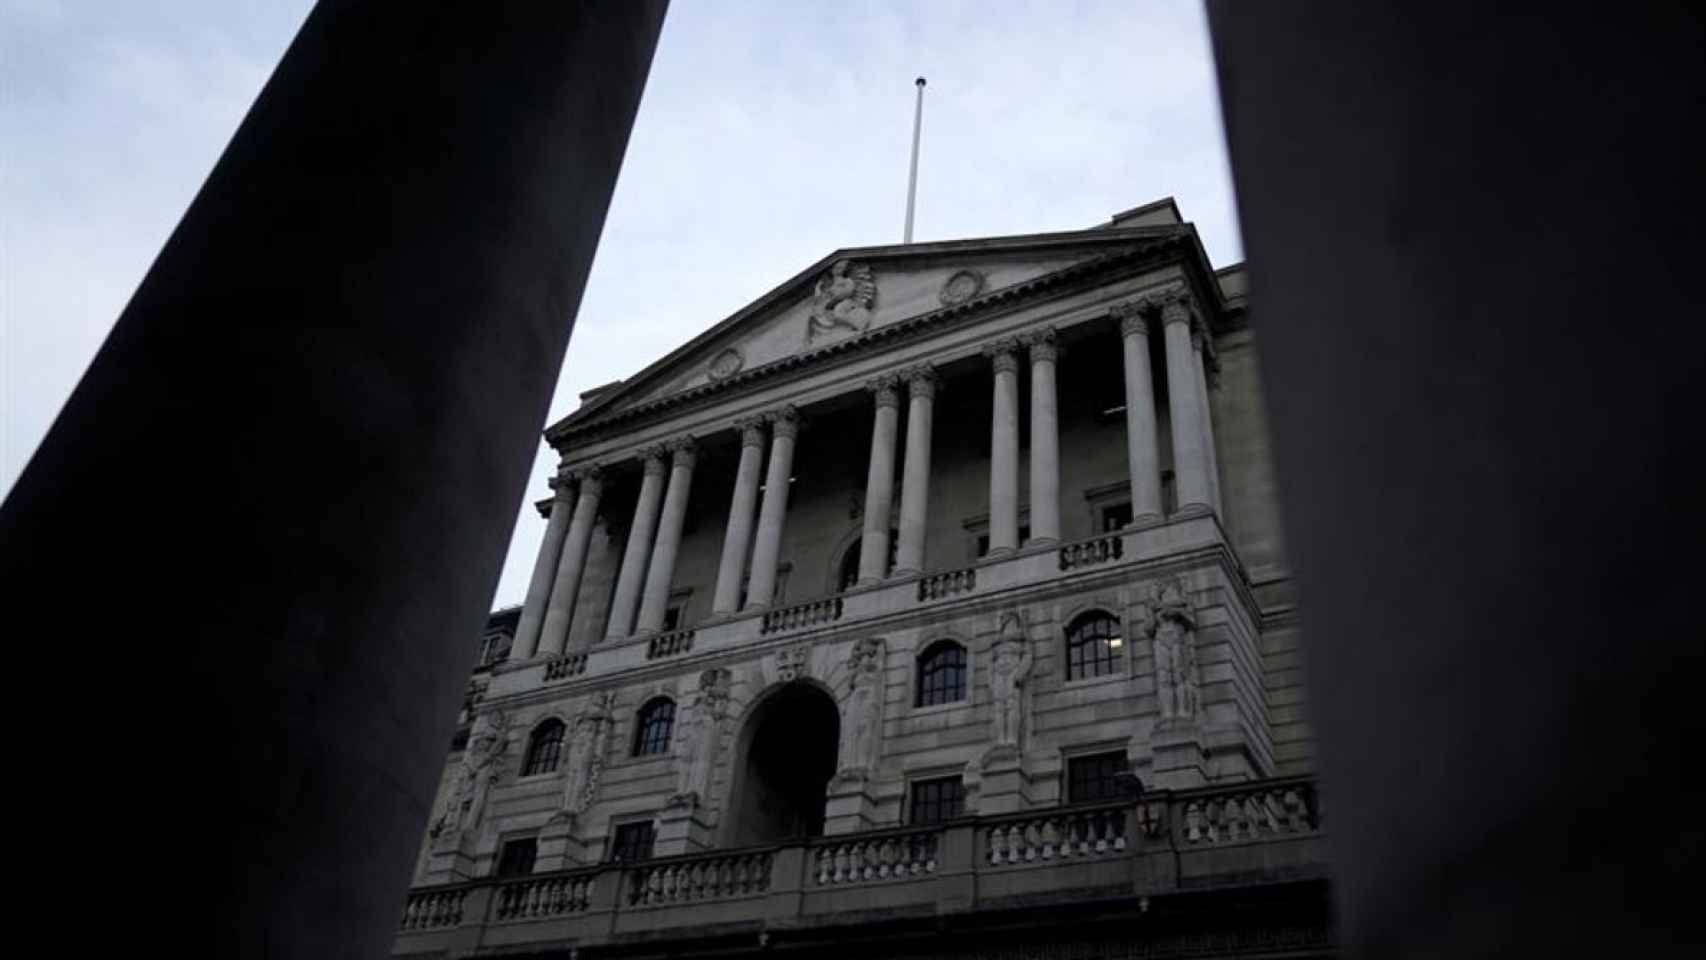 Fachada del Banco de Inglaterra.